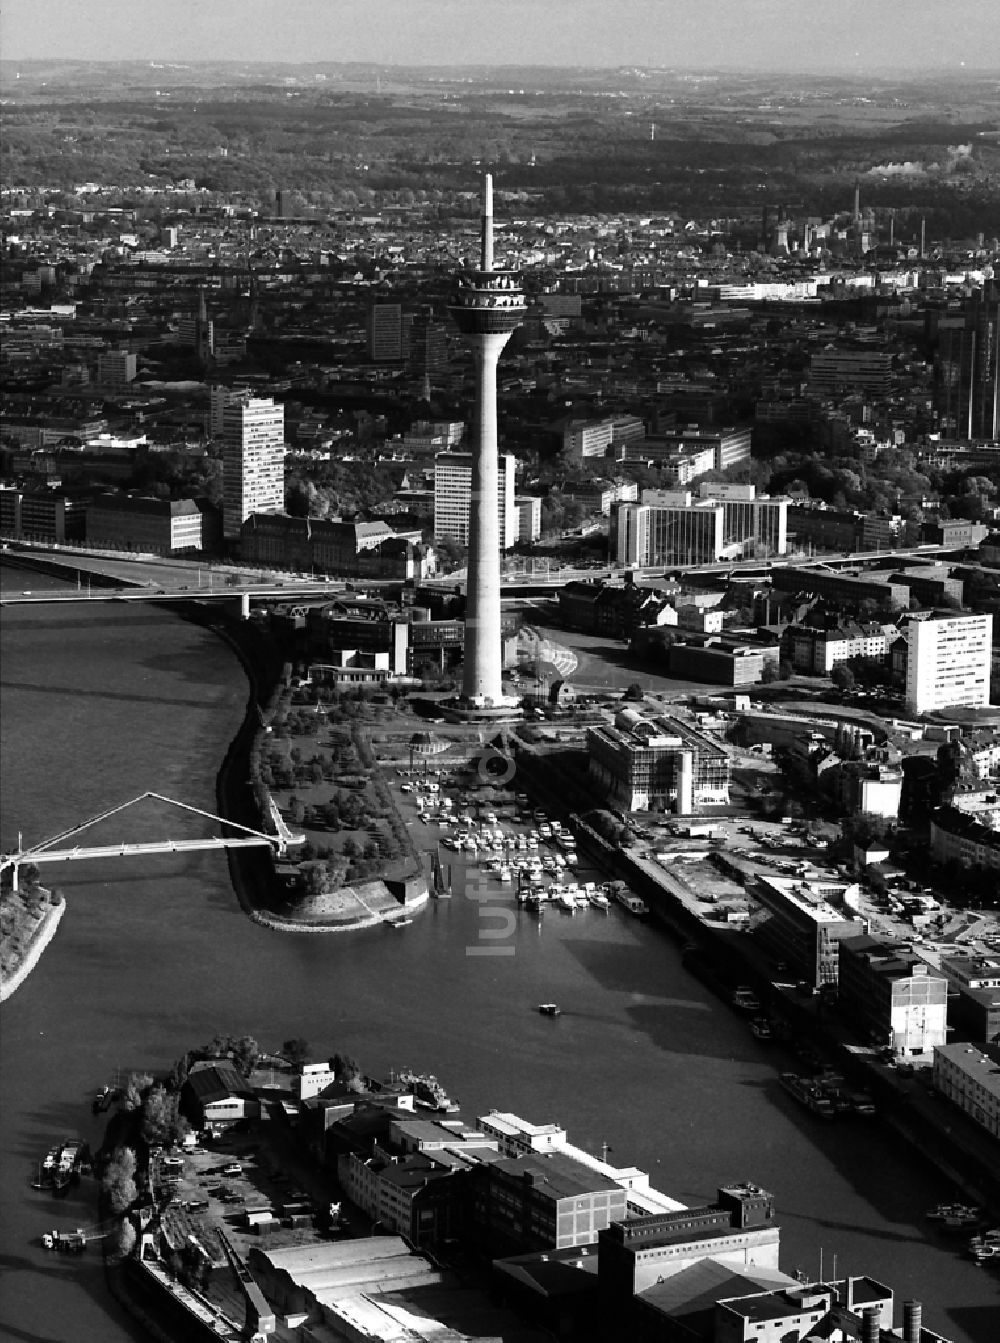 Düsseldorf von oben - Fernmeldeturm und Fernsehturm in Düsseldorf im Bundesland Nordrhein-Westfalen